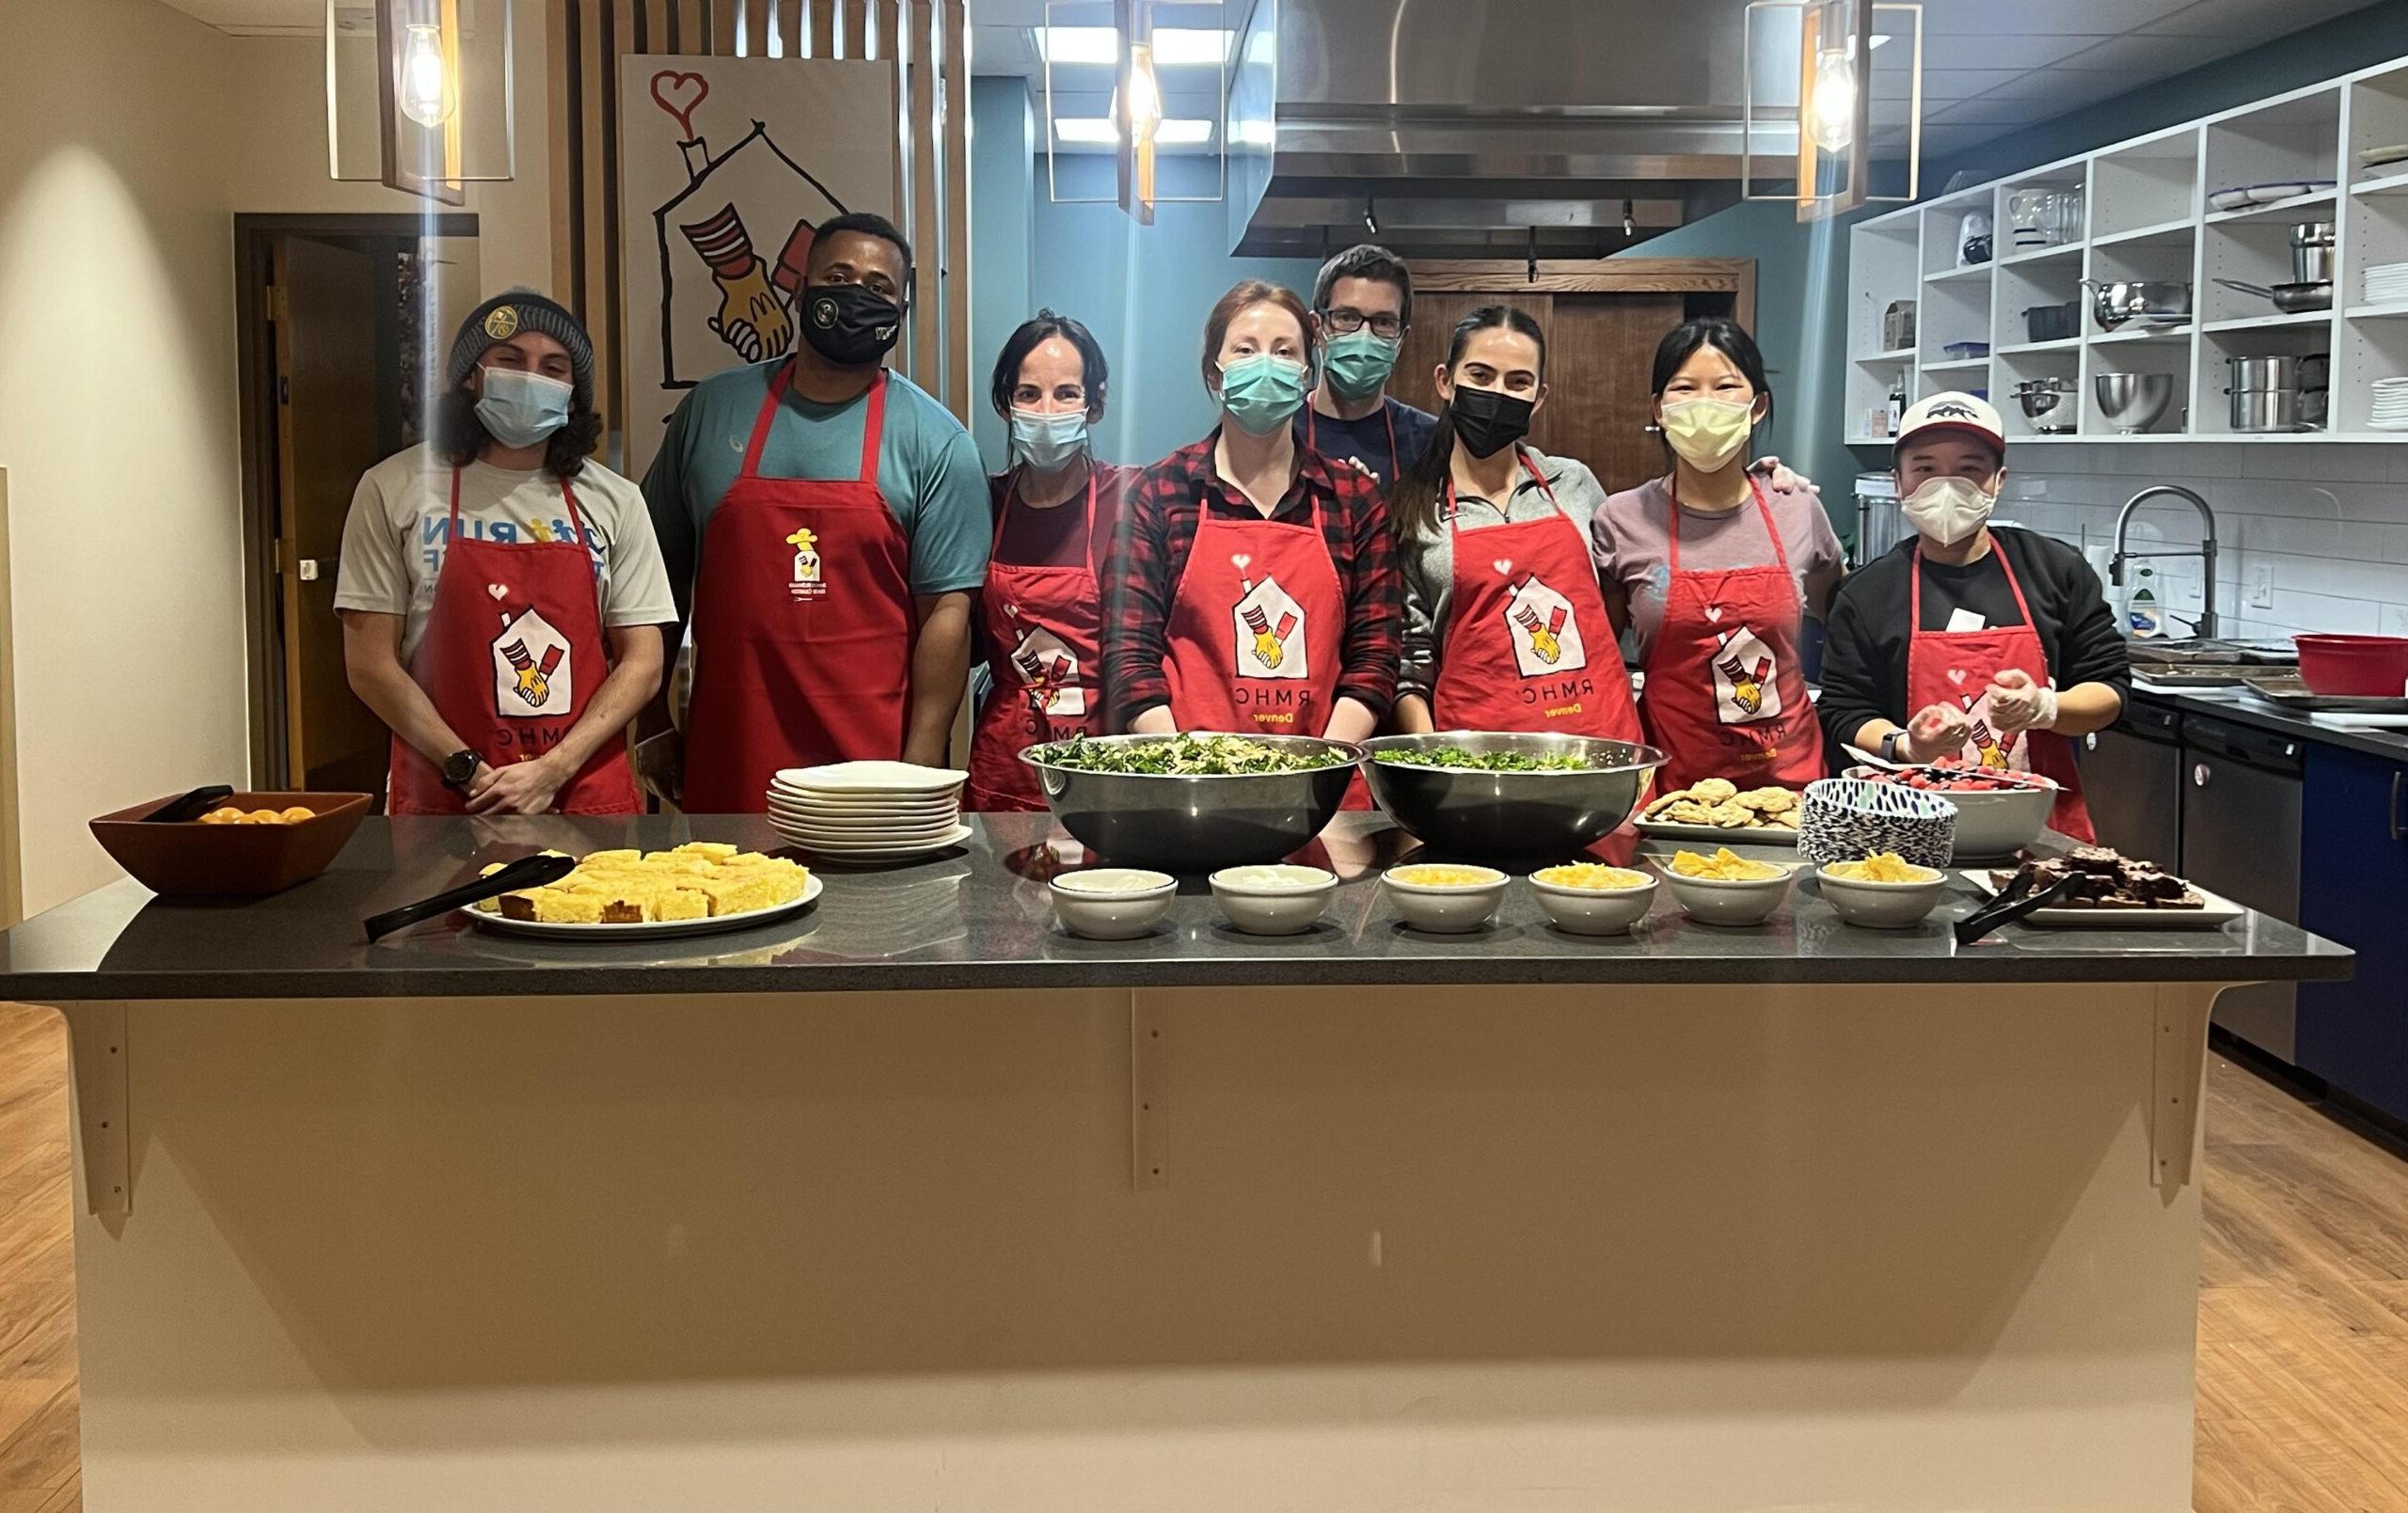 落基山健康团体带领学生上烹饪课的照片.